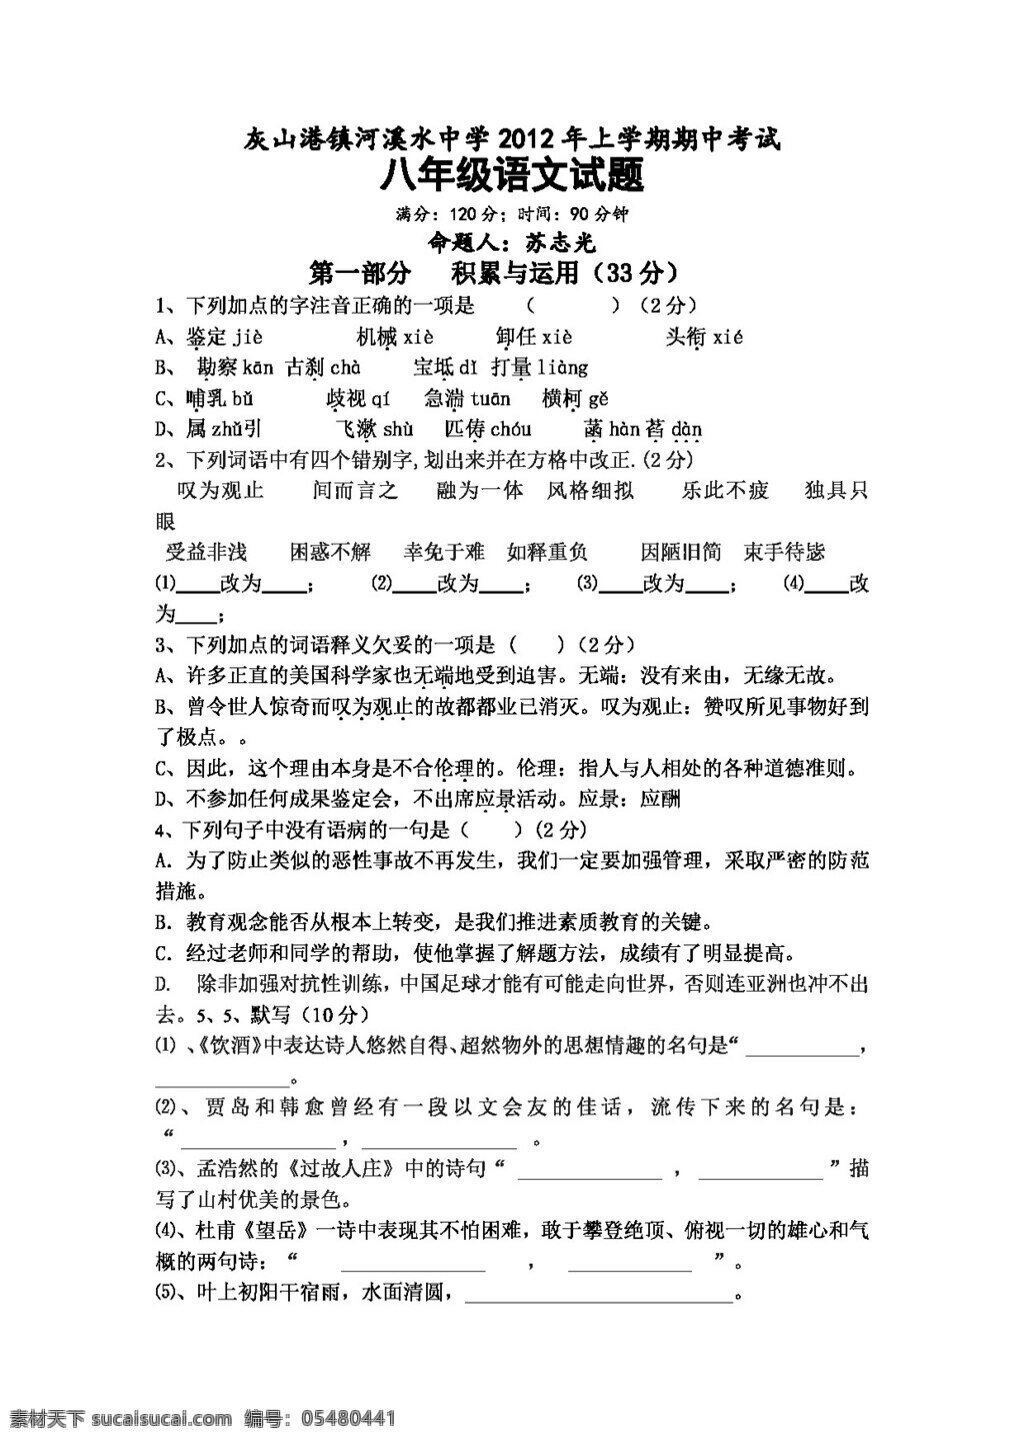 语文 人教 版 湖南省 上学 期期 中 考试 八 年级 试题 八年级下 人教版 试题试卷